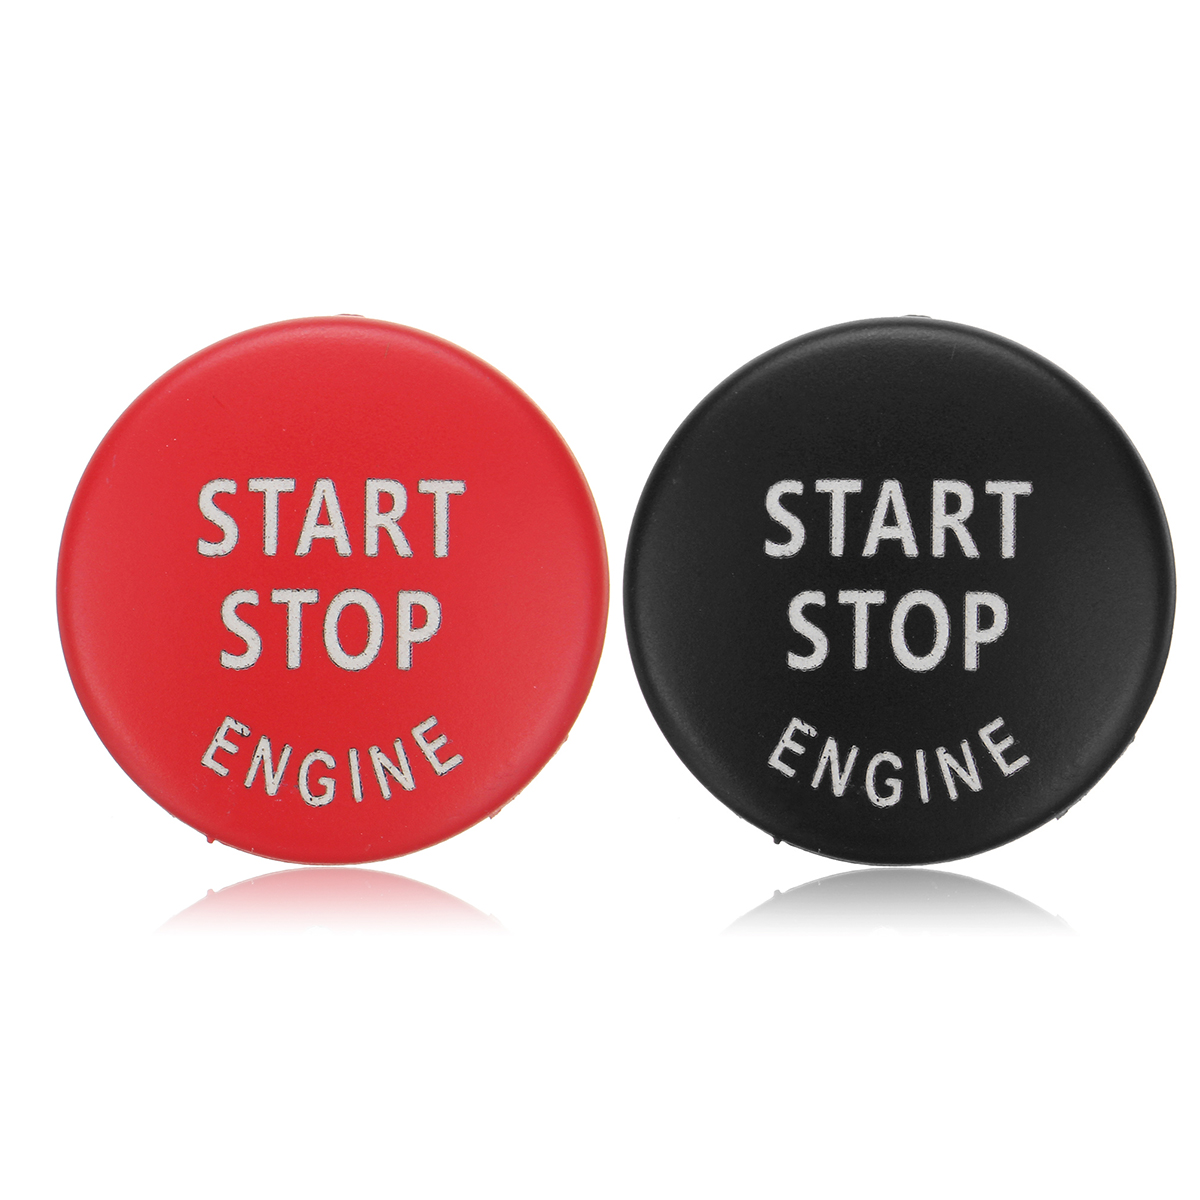 

Car Start Stop Engine Button Switch Red Black Cover for BMW X5 E70 X6 E71 3 E90 E91 E92 E93